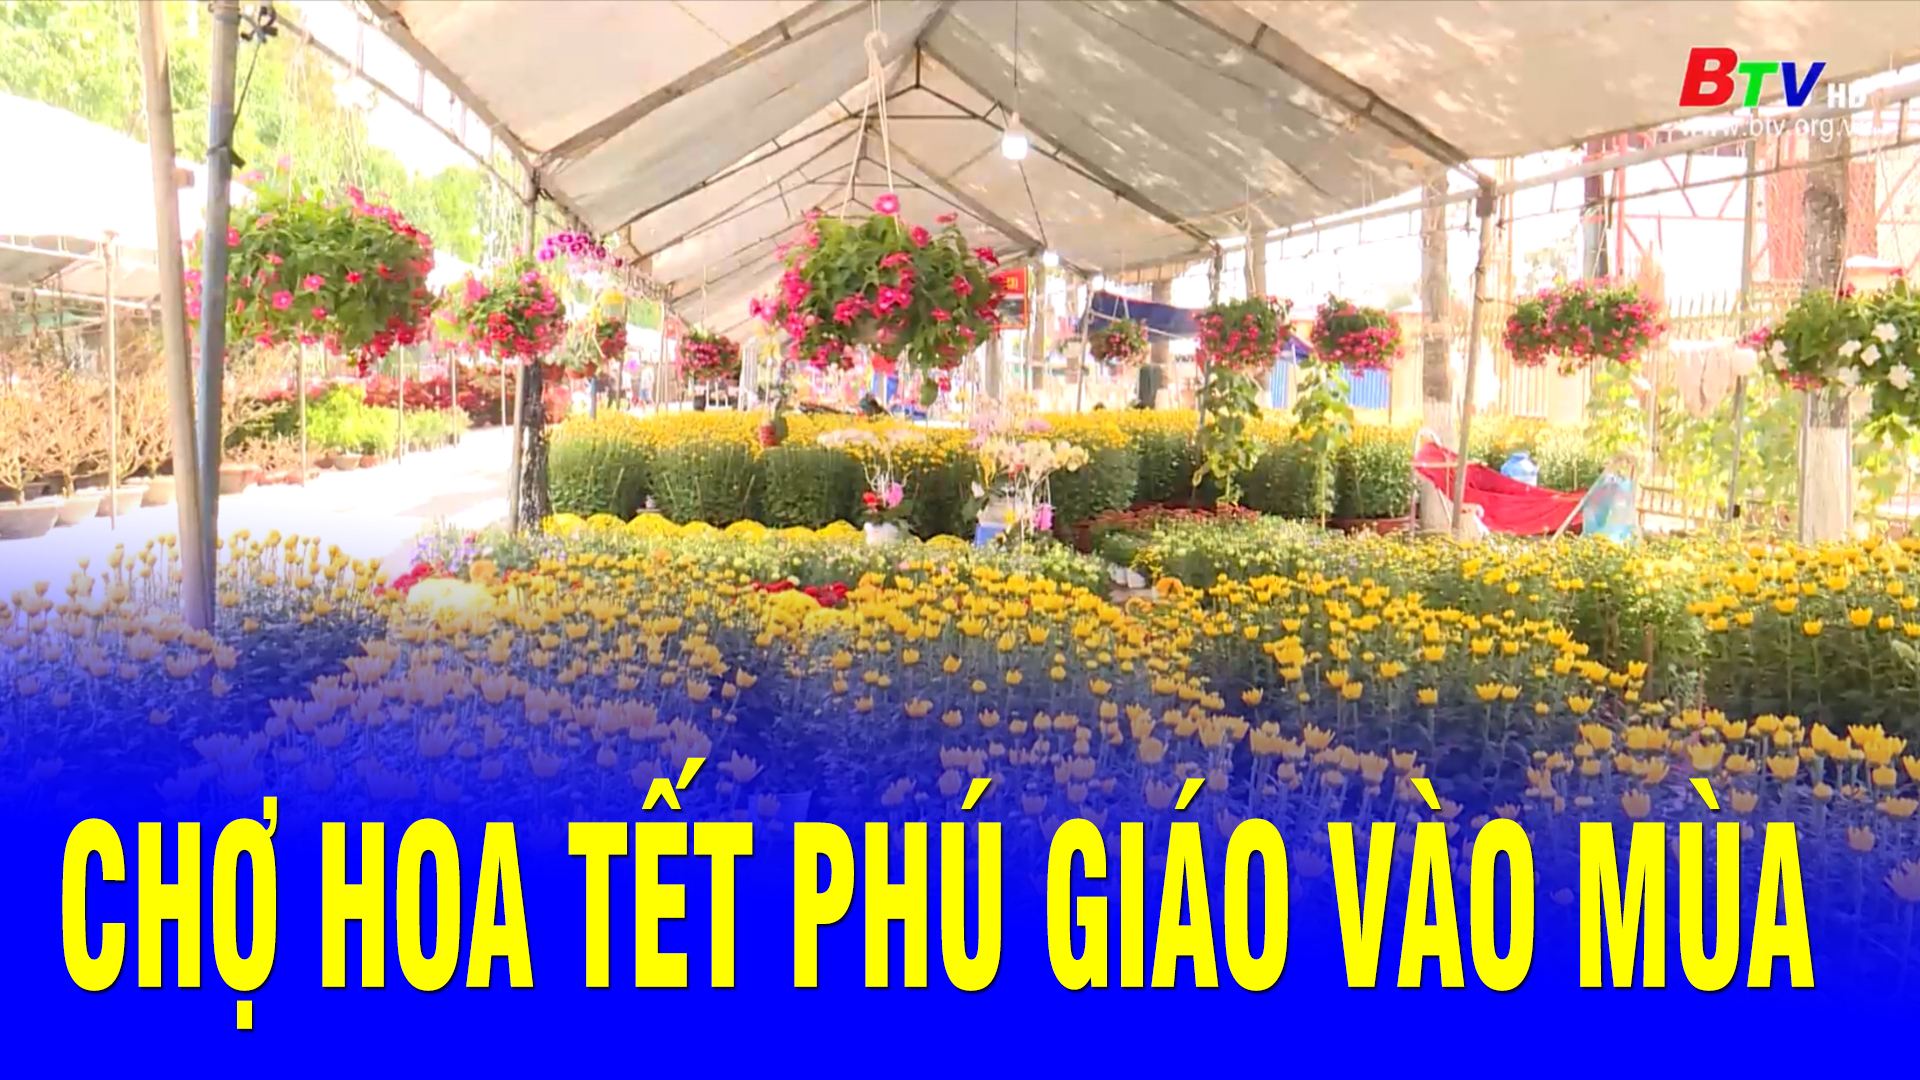 Chợ hoa Tết Phú Giáo vào mùa